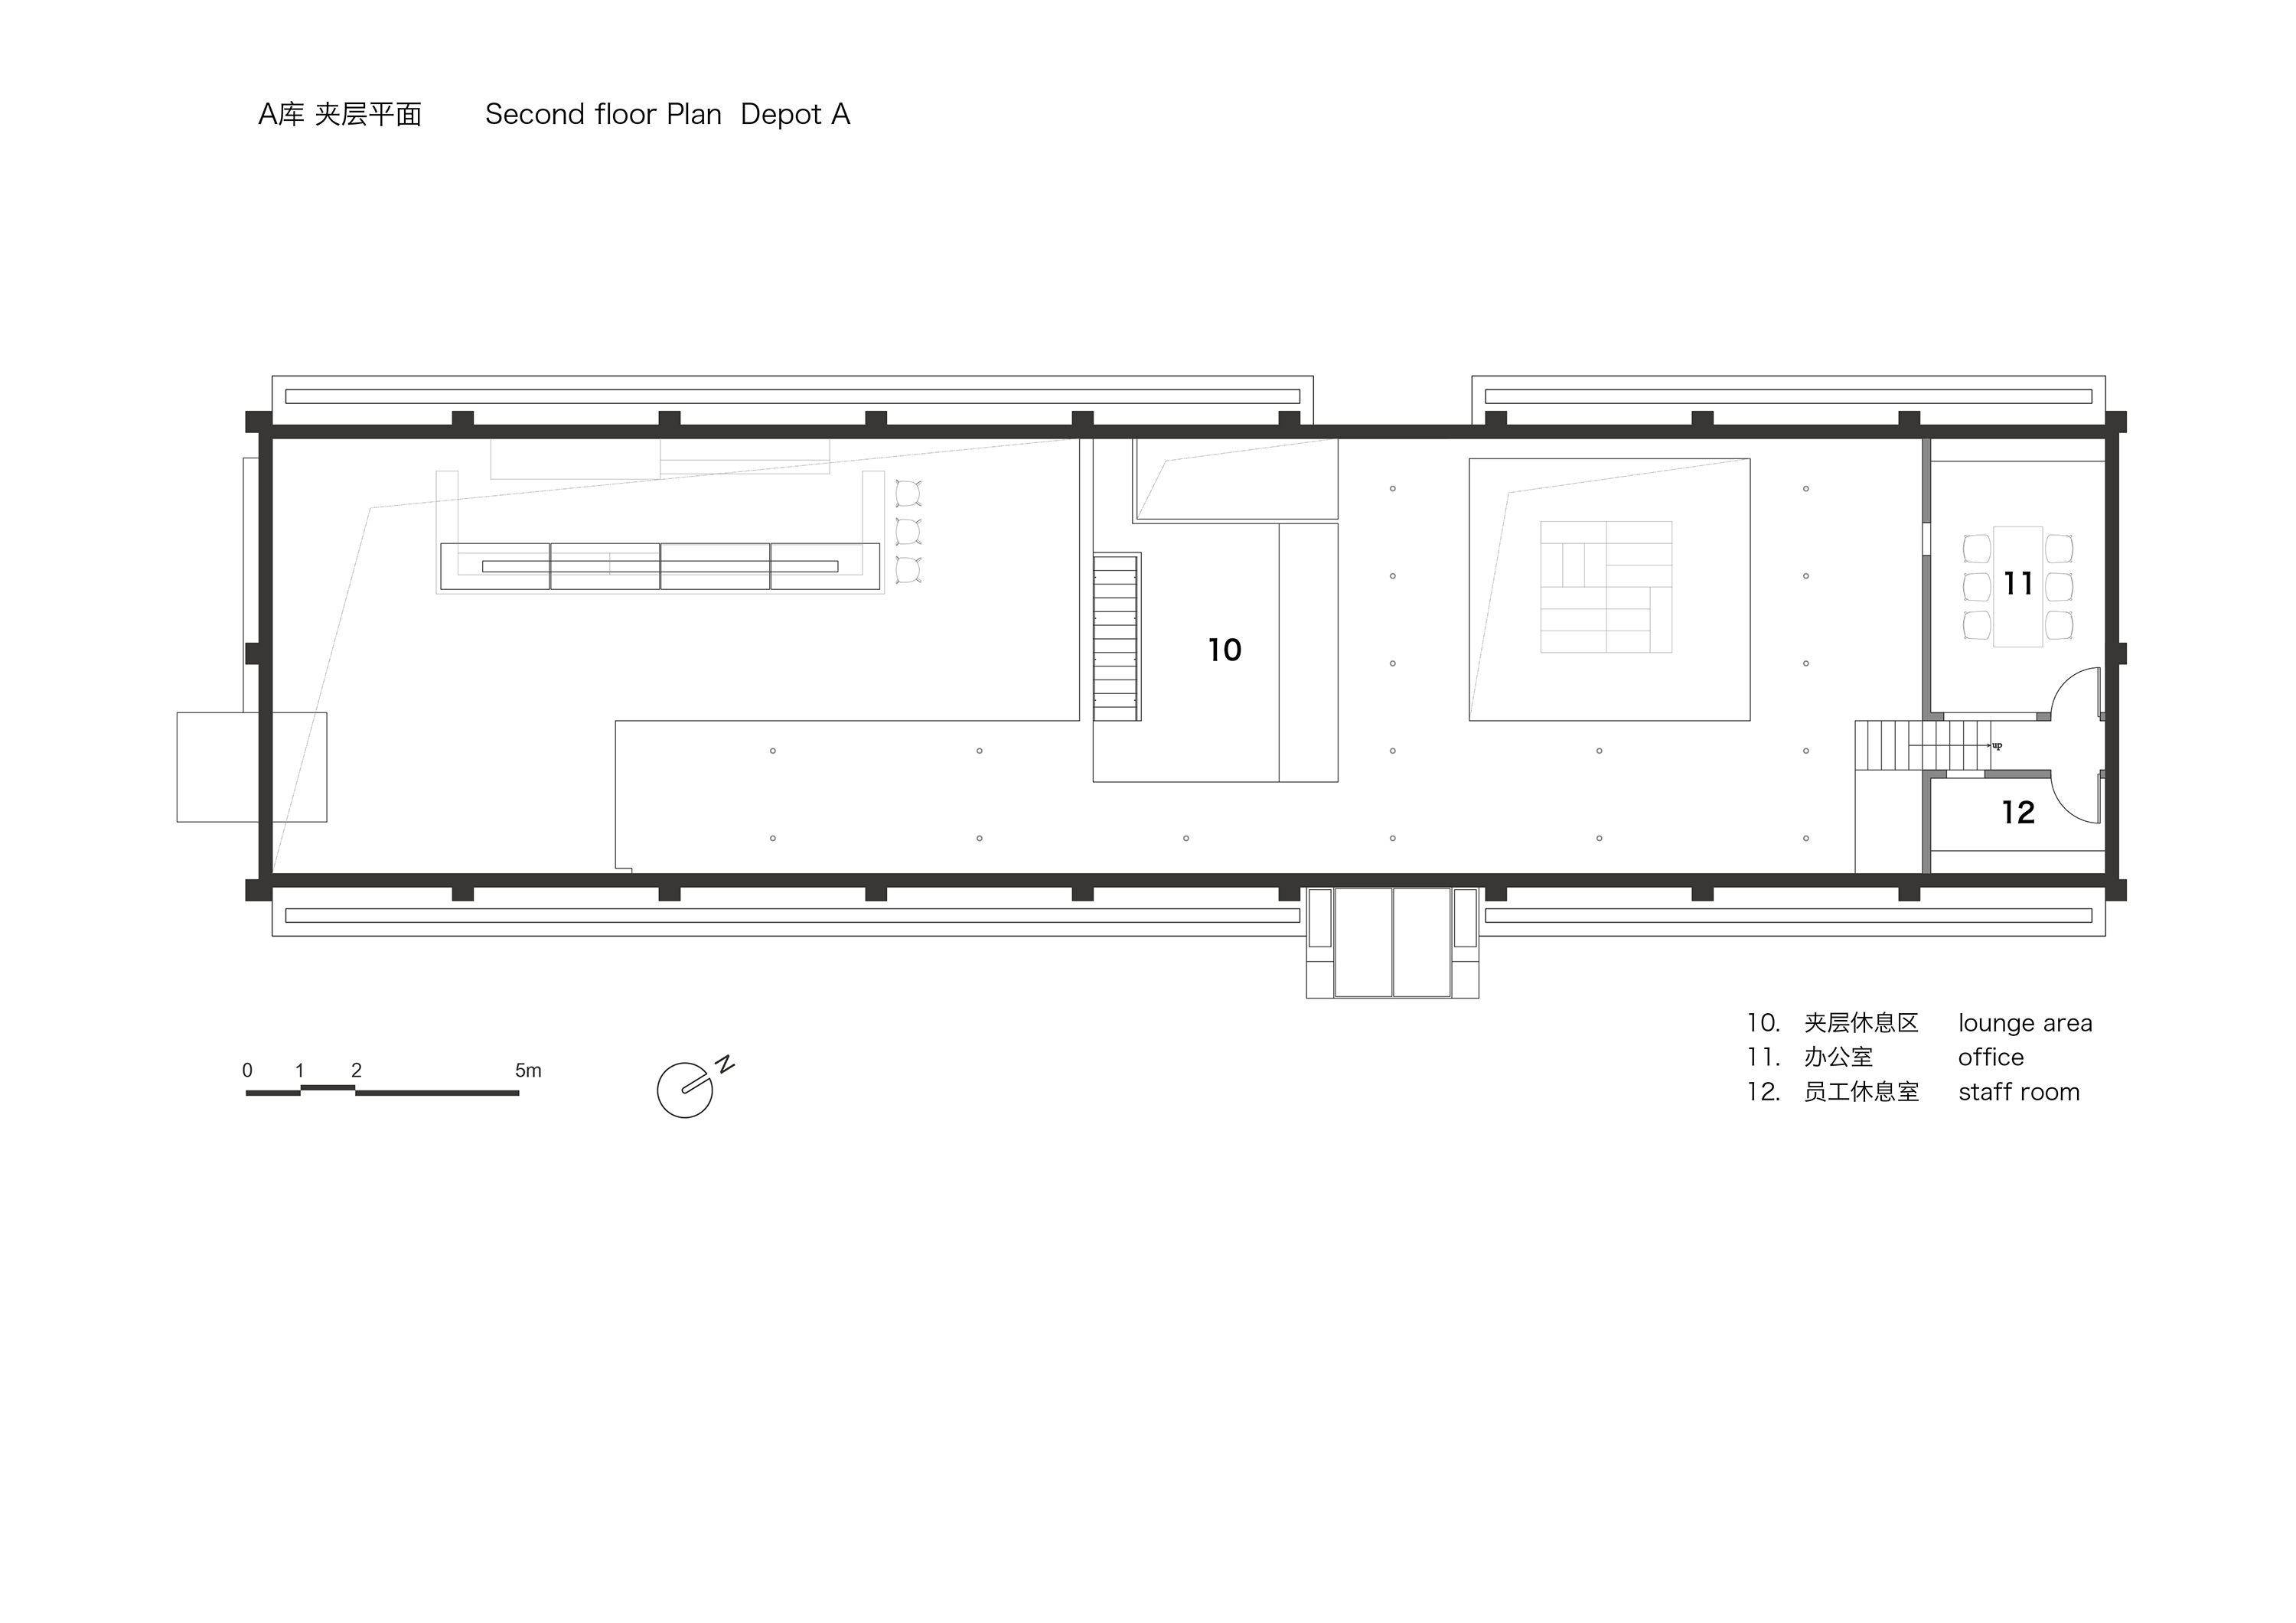 03_A库夹层平面图Second floor Plan Depot A.jpg